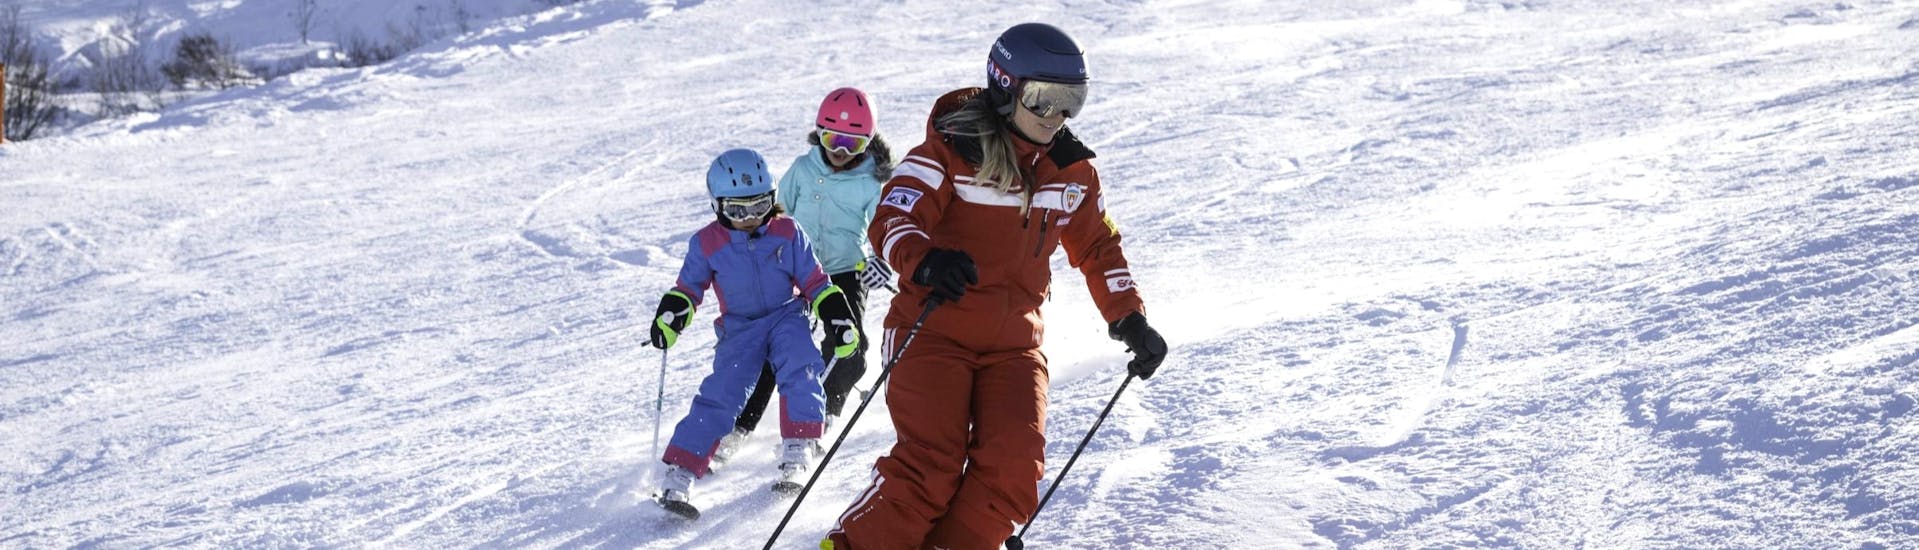 Clases de esquí para niños a partir de 3 años.